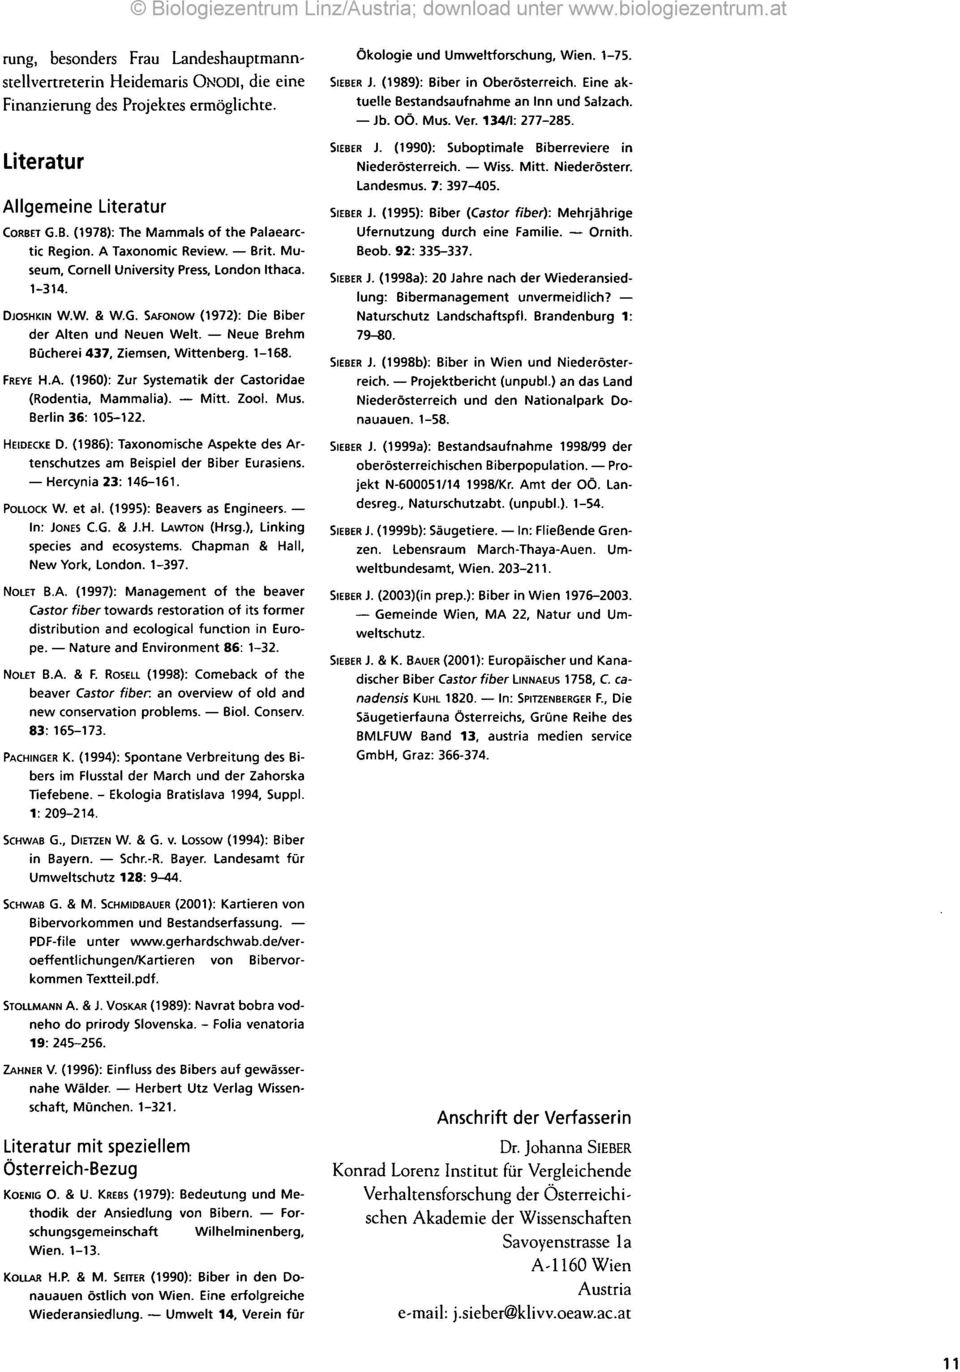 Neue Brehm Bücherei 437, Ziemsen, Wittenberg. 1-168. FREYE H.A. (1960): Zur Systematik der Castoridae (Rodentia, Mammalia). Mitt. Zool. Mus. Berlin 36: 105-122. HEIDECKE D.